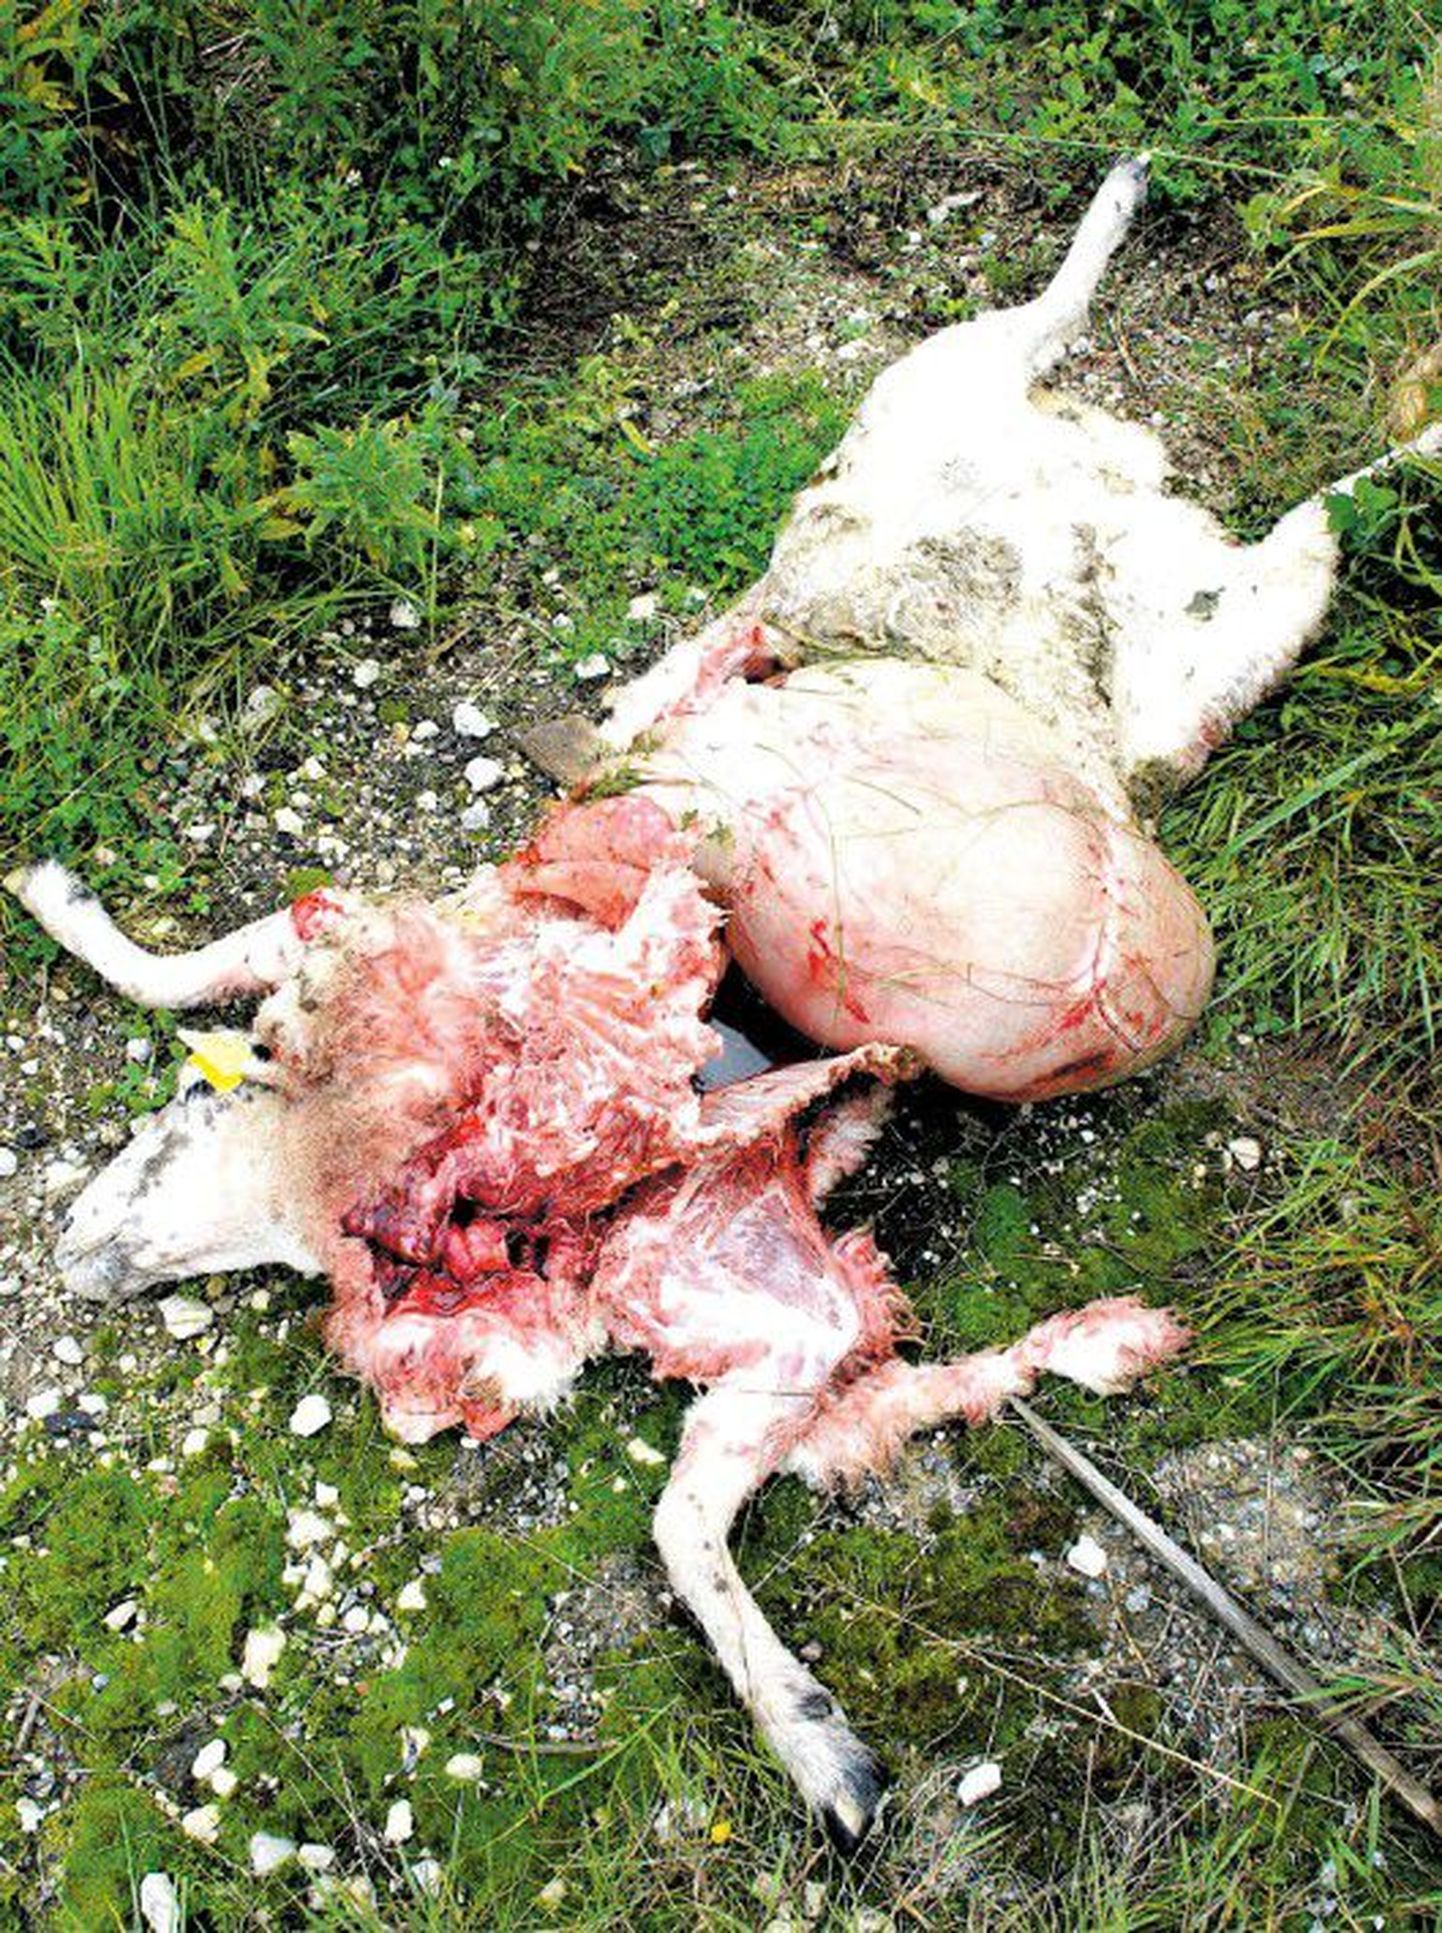 Huntidele kõlbas Vasula lambakarjast söögiks vaid üks loom, kuus lammast murdsid võsavillemid lihtsalt maha. Lisaks lõppesid maha kaks rängalt viga saanud lammast.